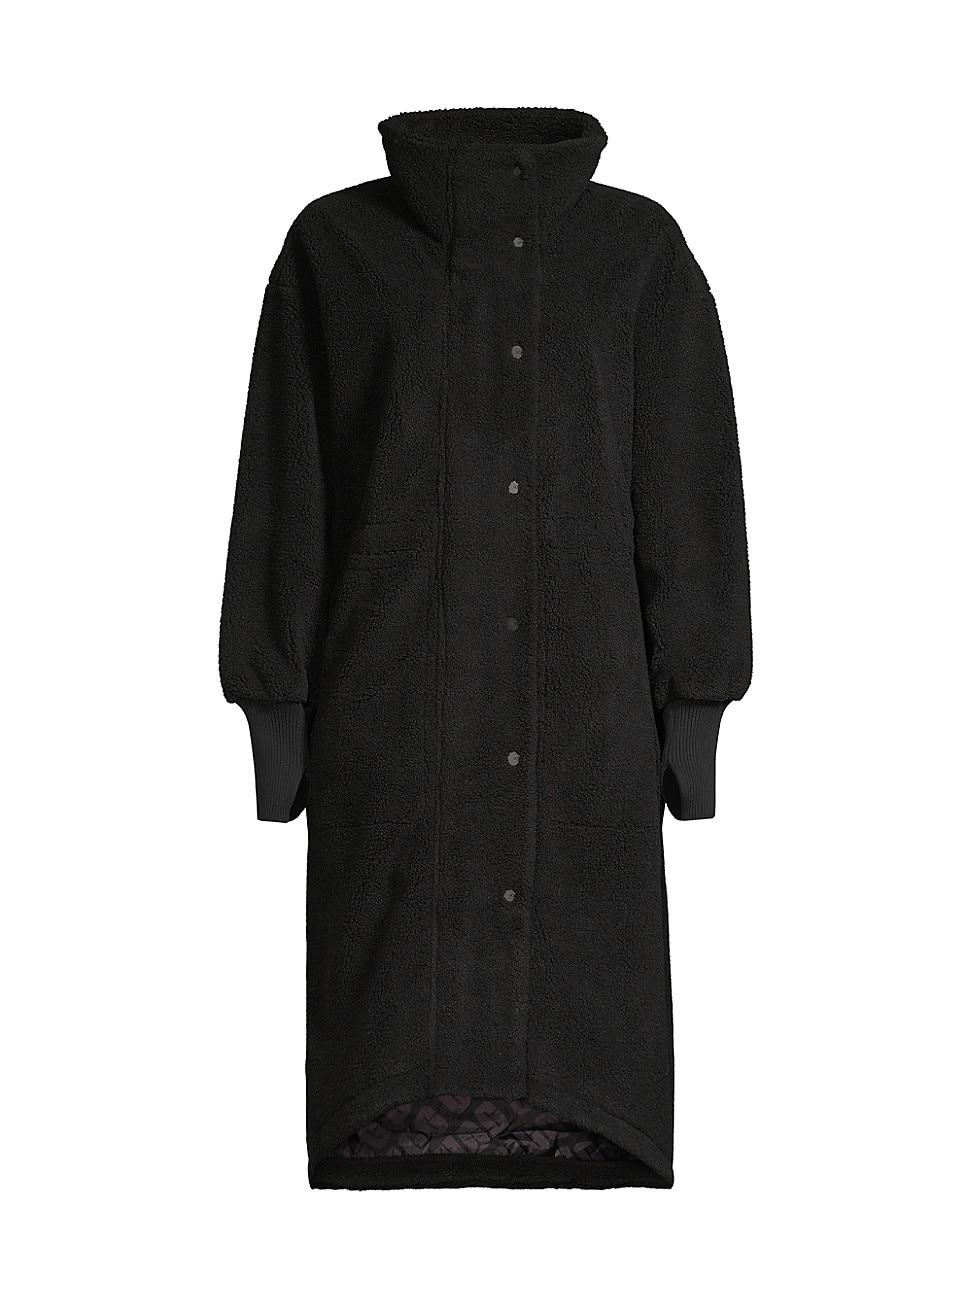 UGG Rhiannon Sherpa Coat in Black | Lyst